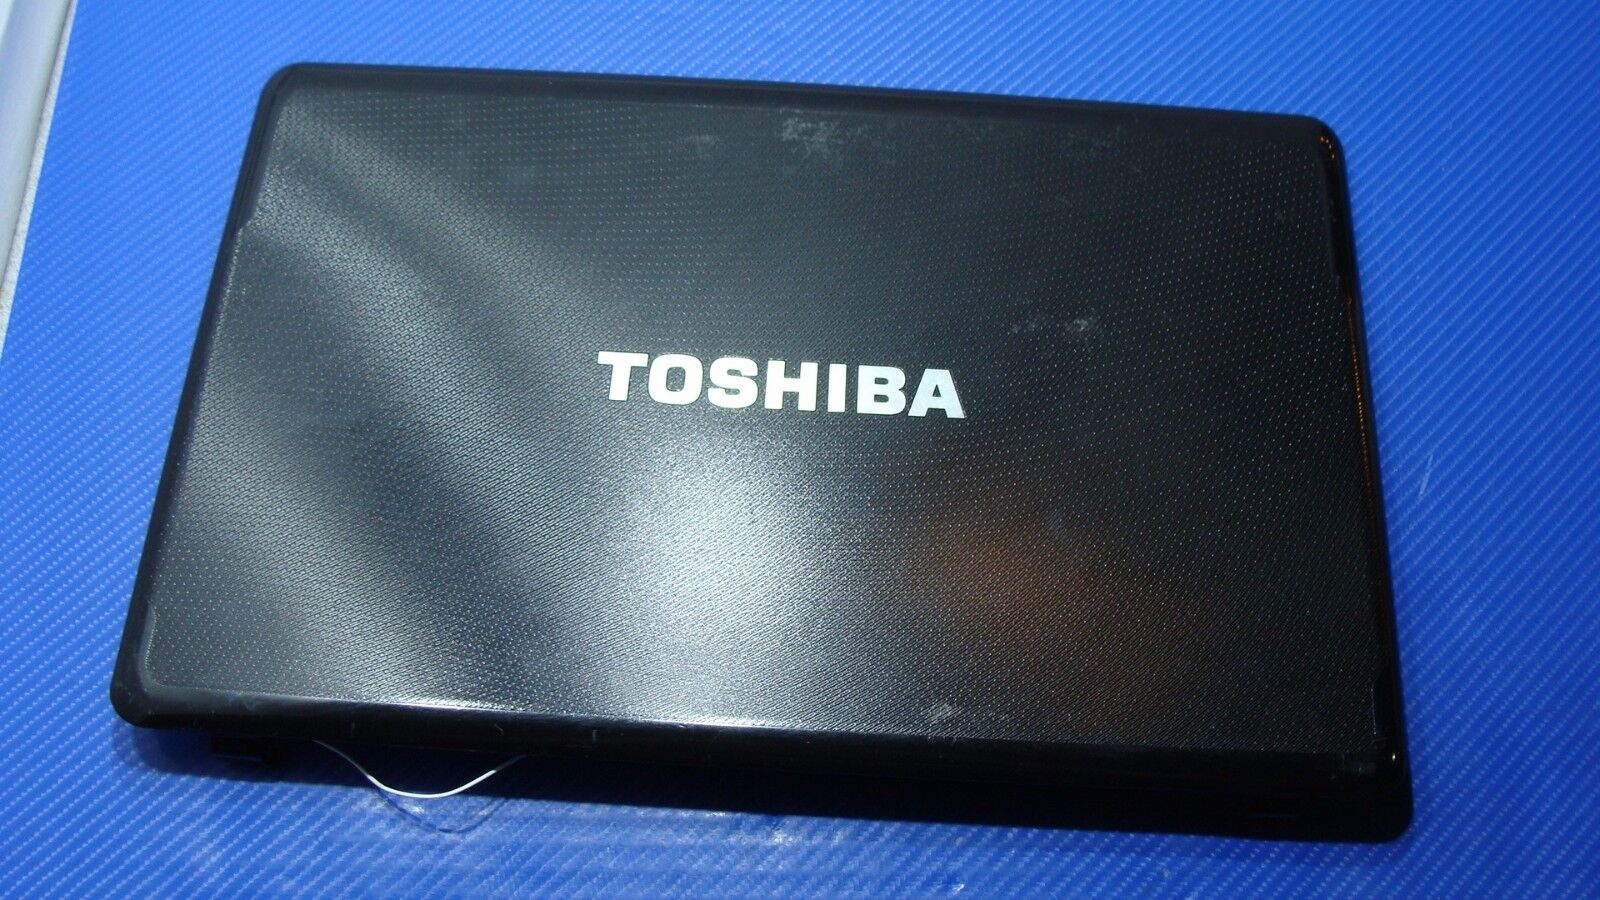 Toshiba Satellite A665D-S5175 15.6